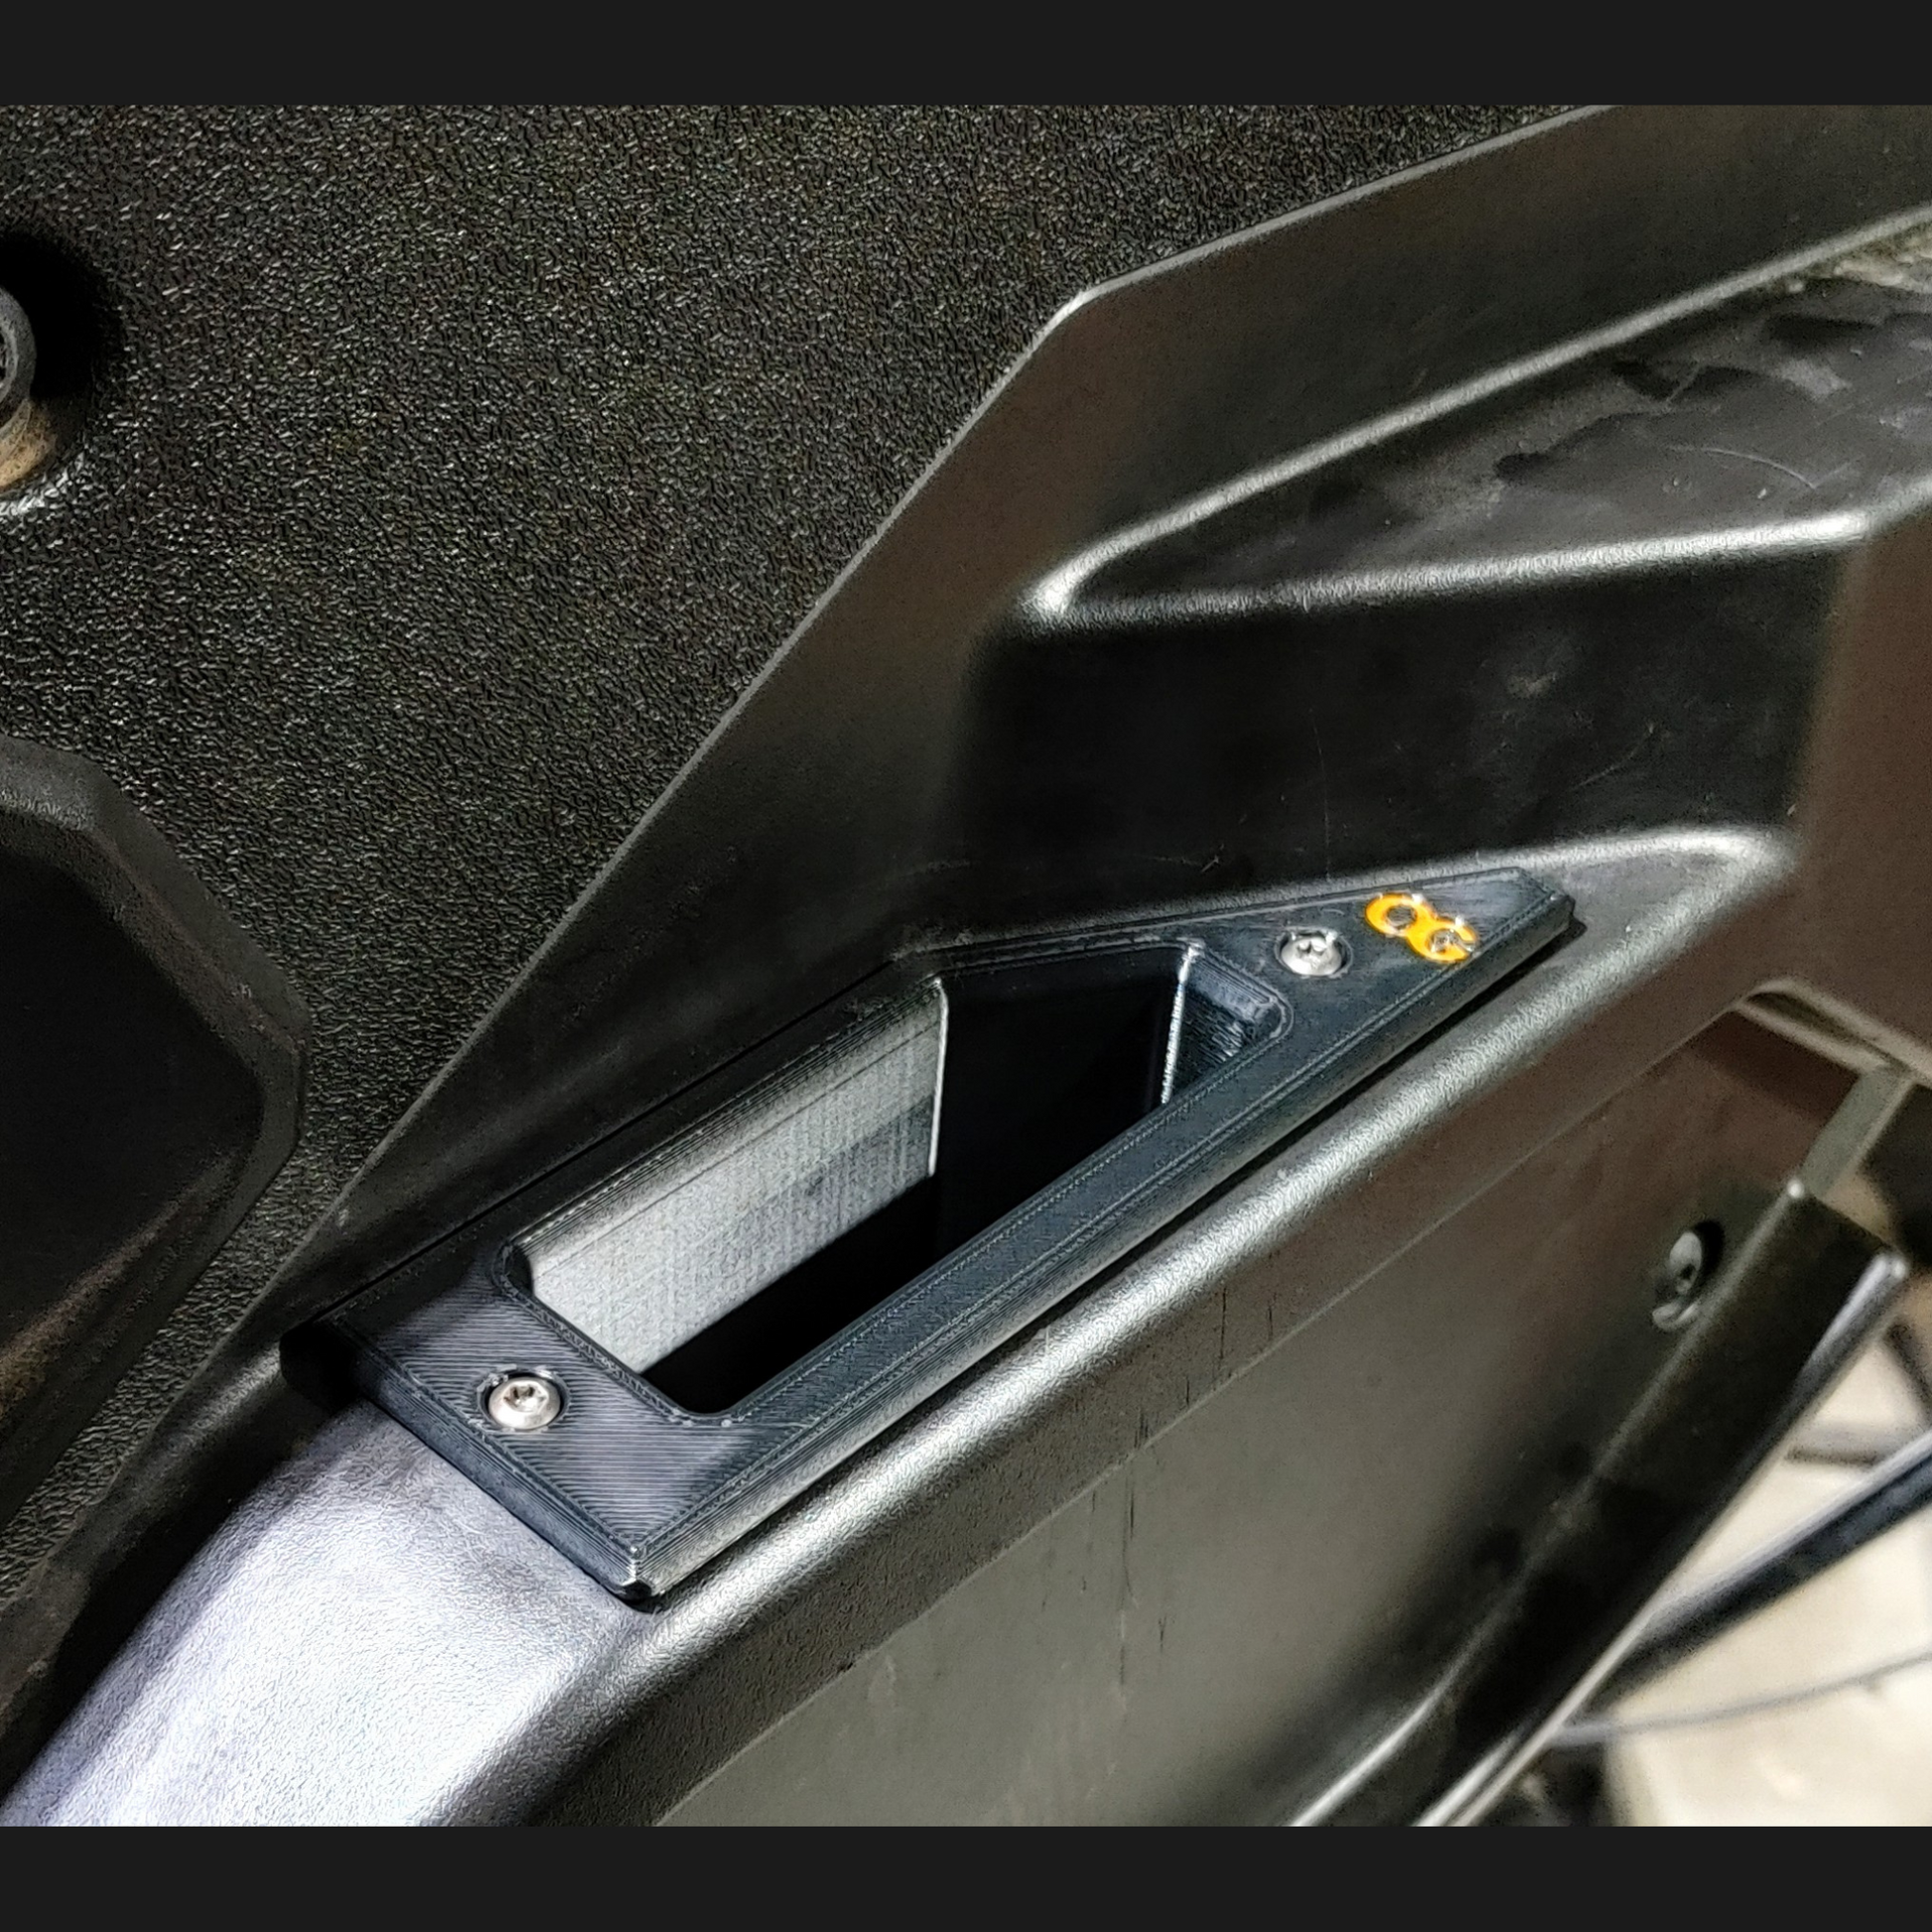 Passenger side OG recessed door pull handle installed on the polaris general door.